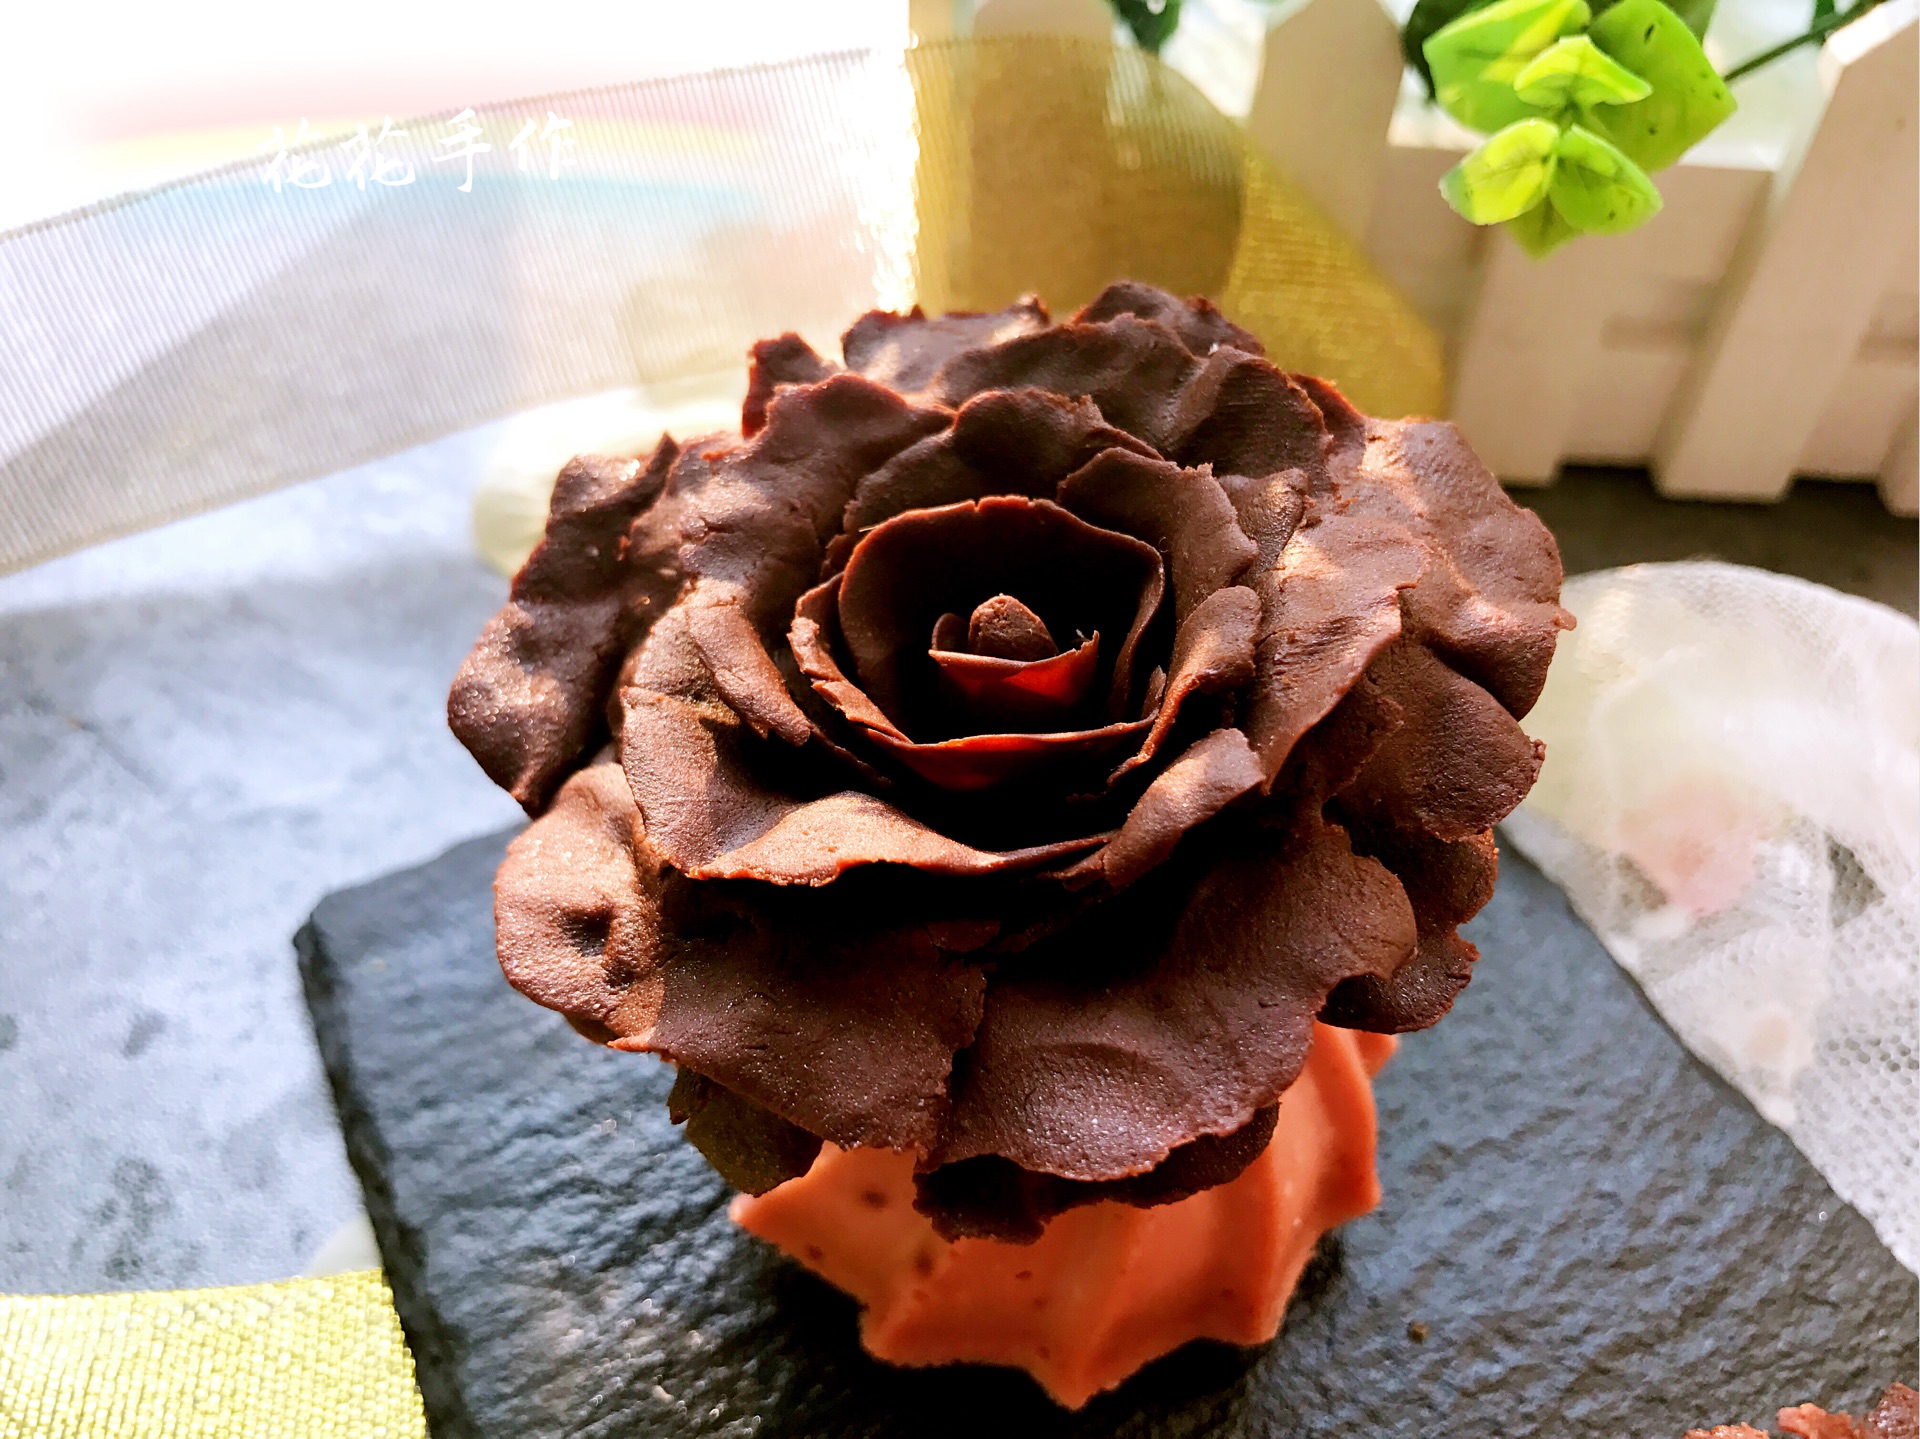 五颜六色的巧克力玫瑰浓密的田地模糊. 库存图片. 图片 包括有 花梢, 甜心, 围绕, 重点, 神仙, 完美 - 209816701